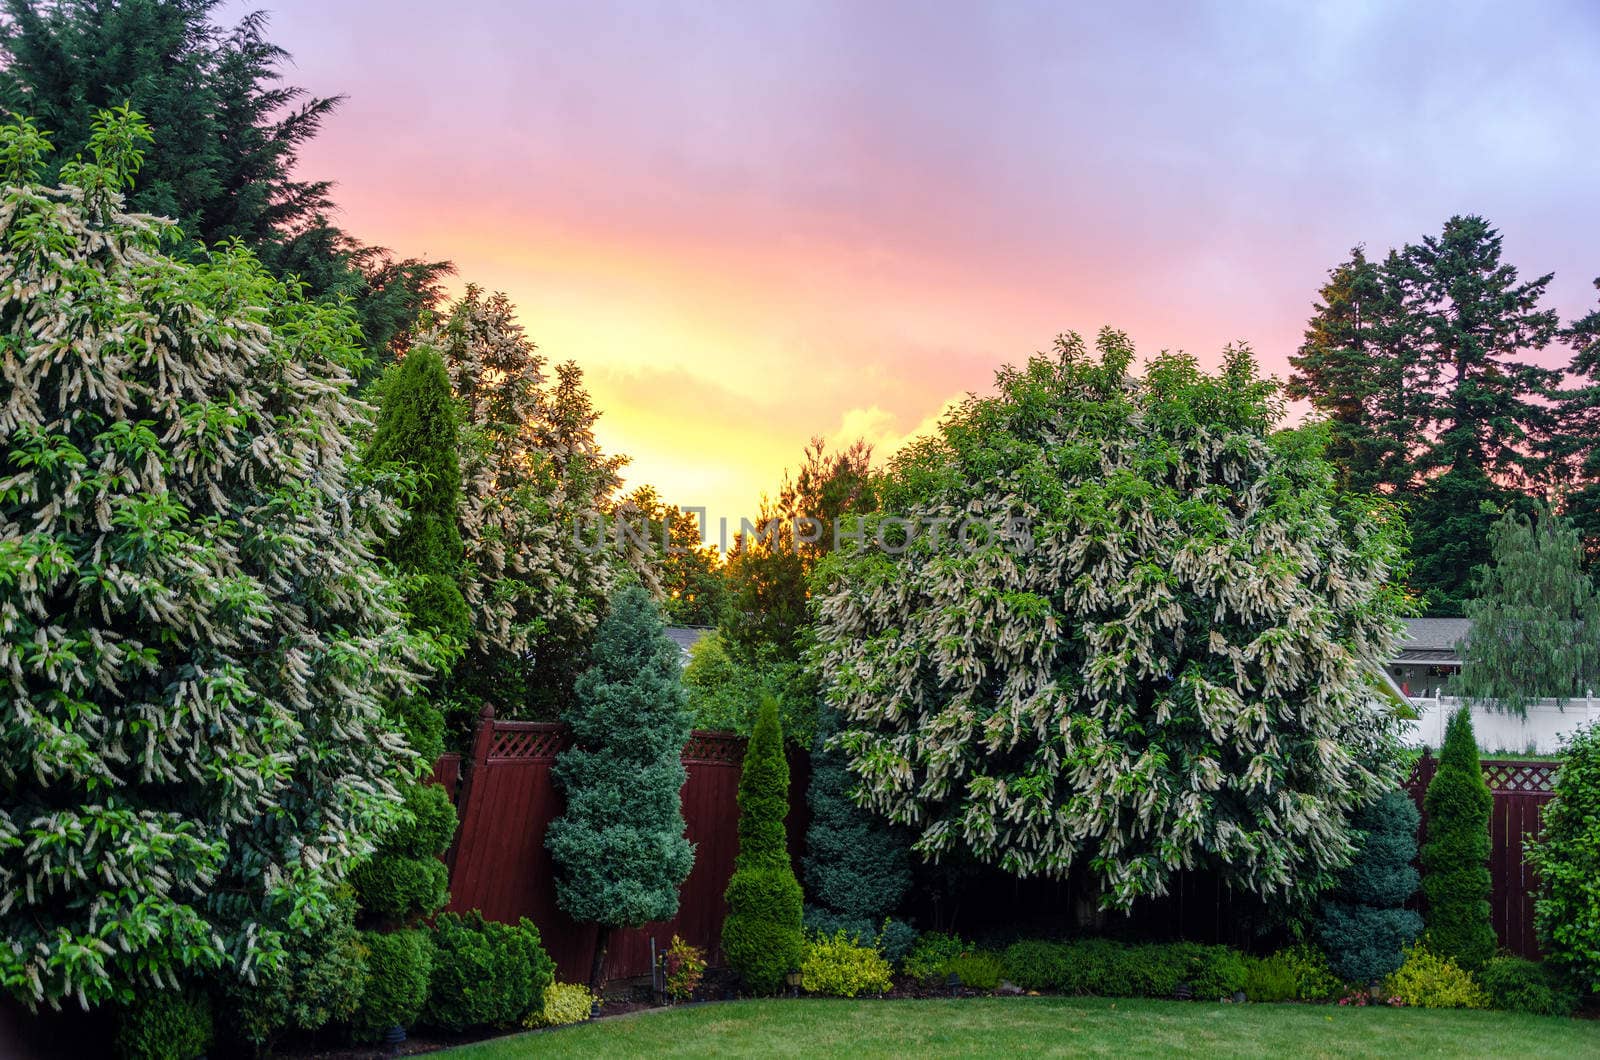 Beautiful sunset in a nice suburban backyard near Portland, Oregon